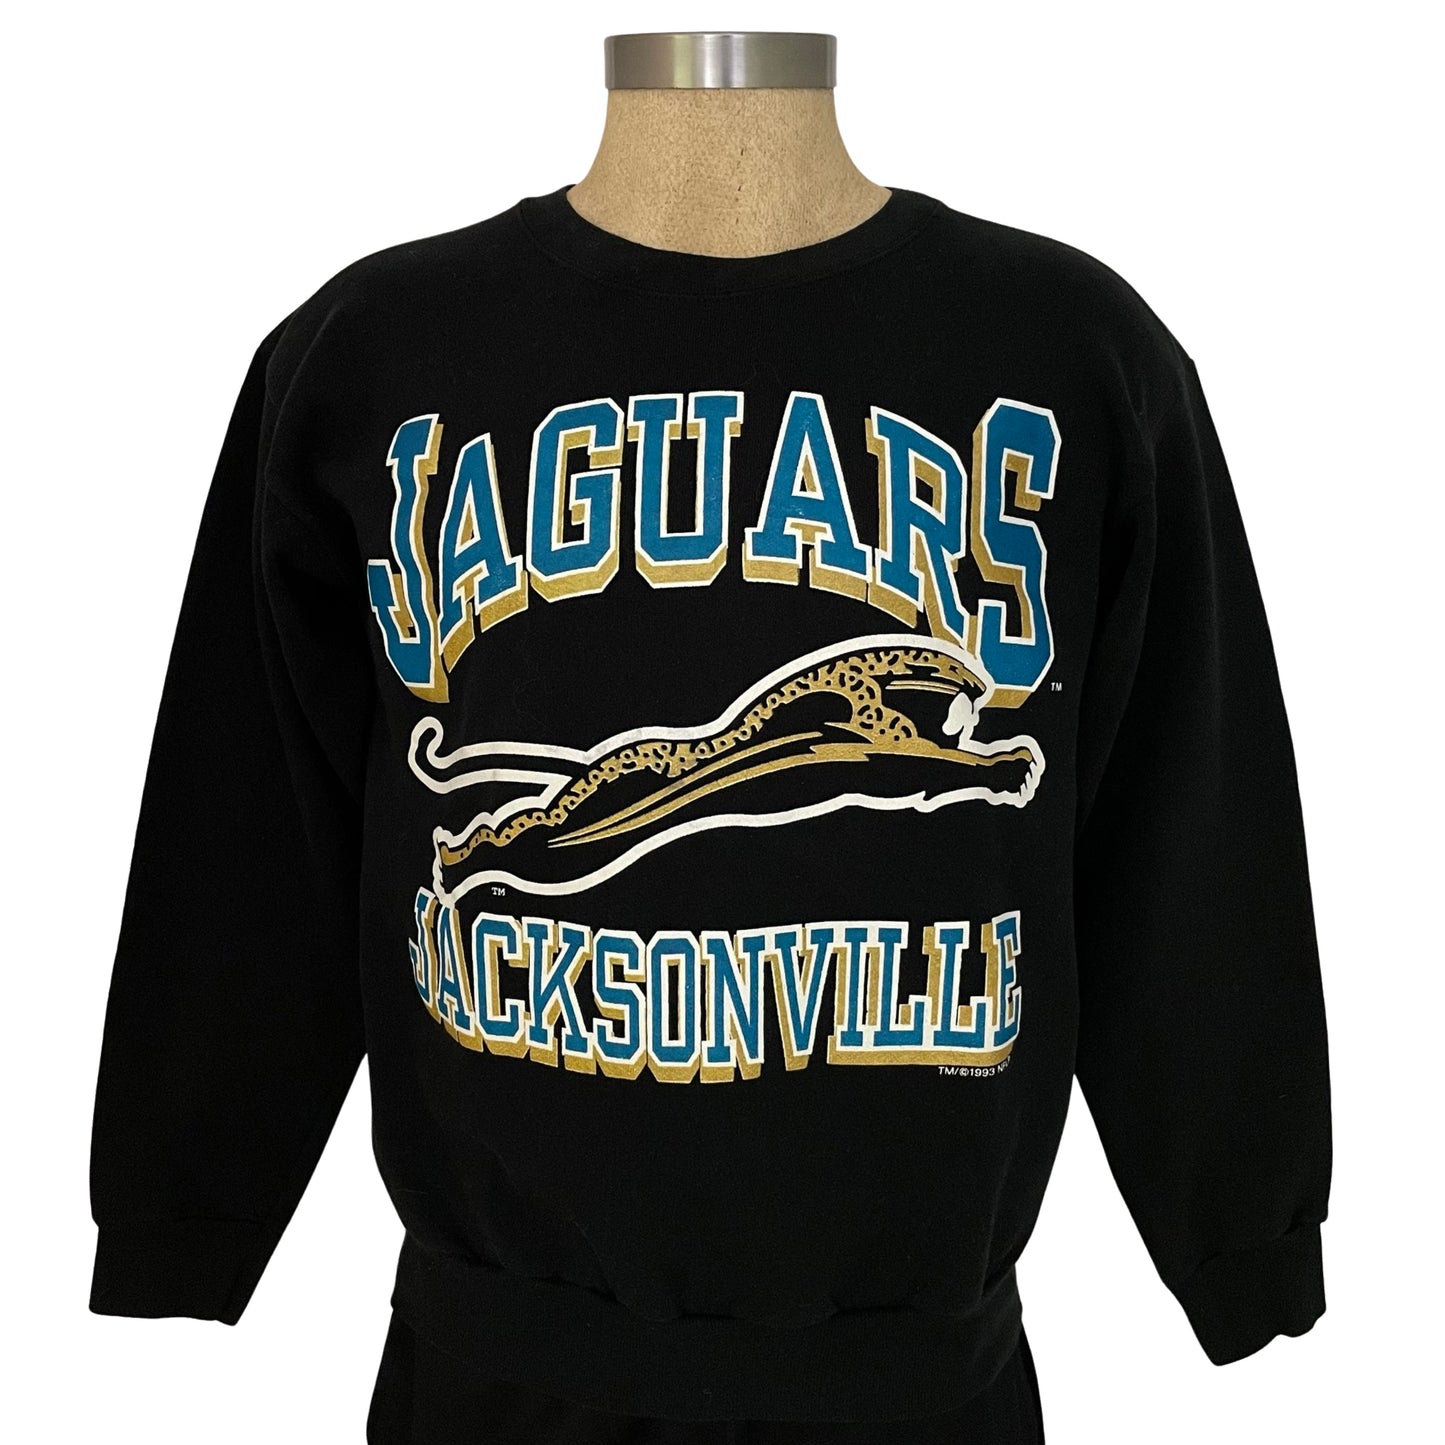 Vintage Jacksonville Jaguars 1993 banned logo sweatshirt size MEDIUM